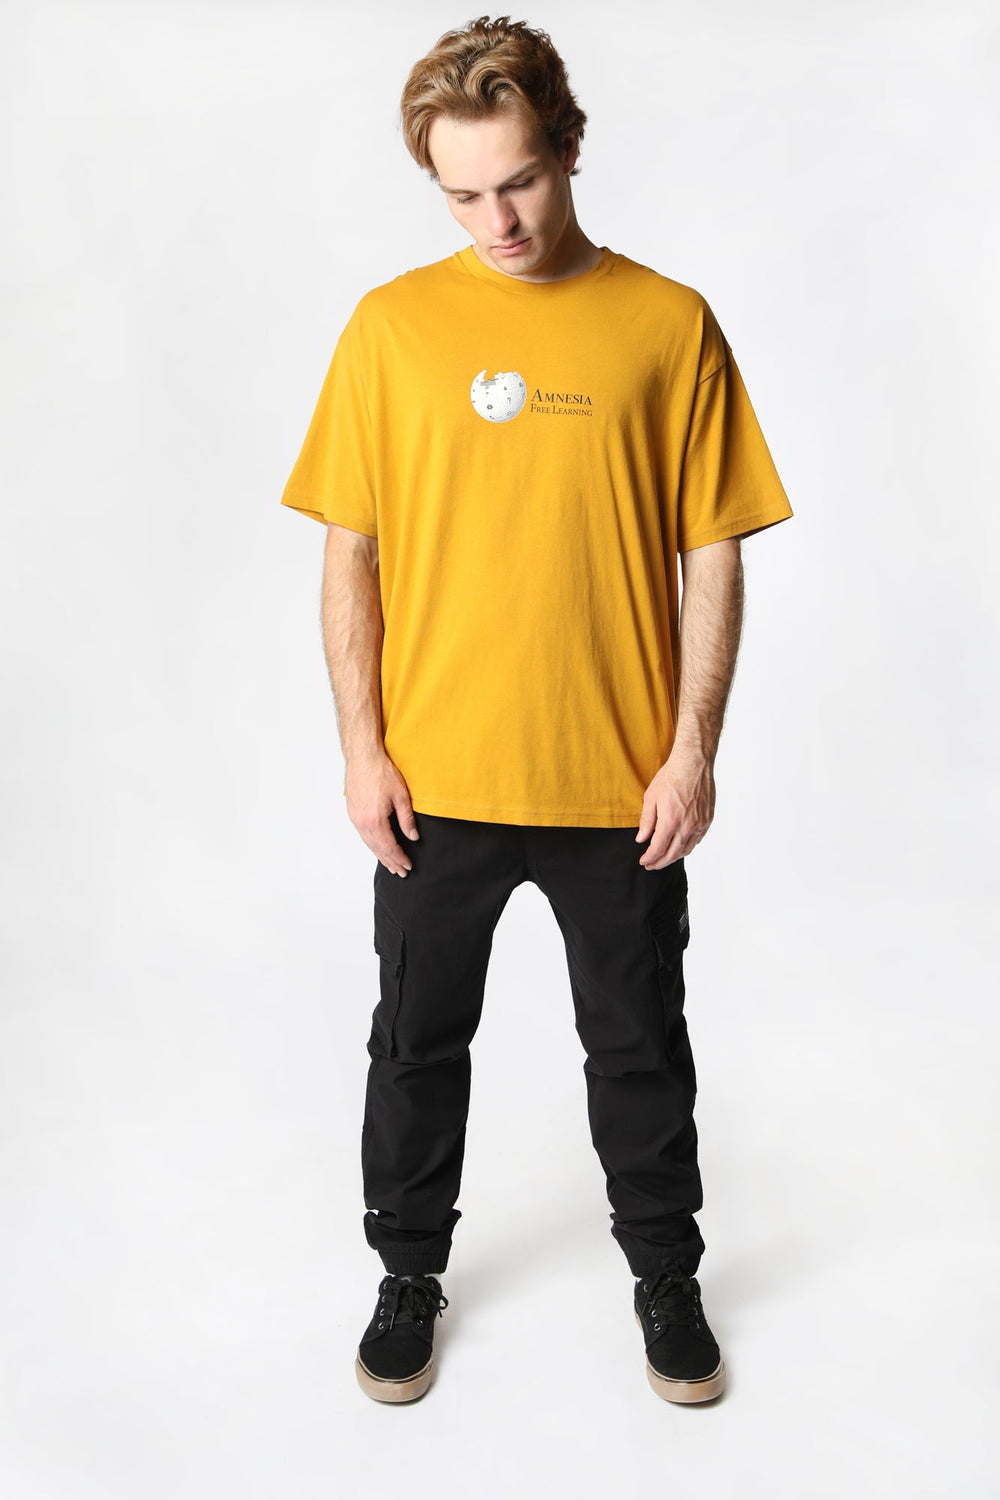 Amnesia Mens Graphic T-Shirt Mustard